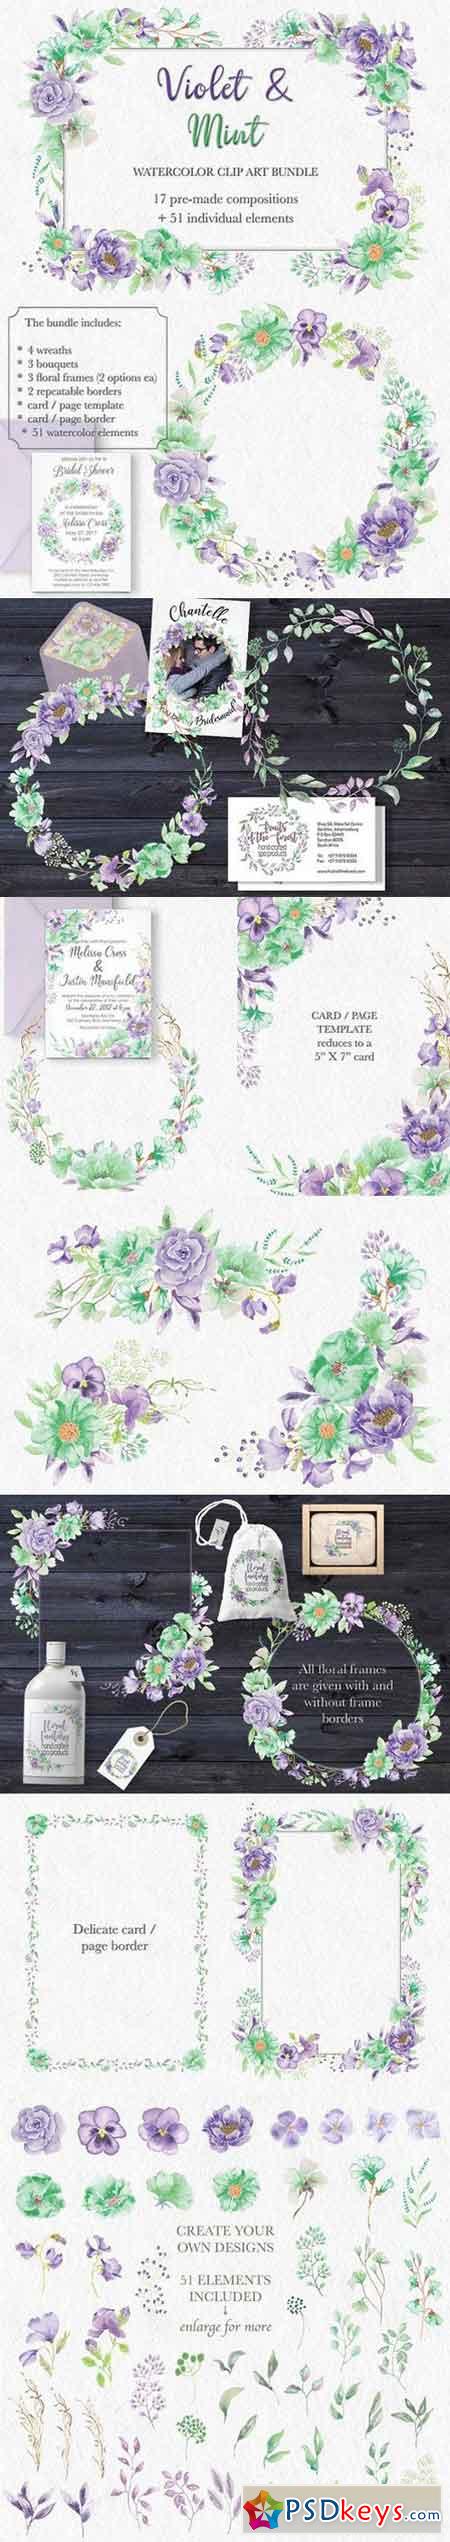 'Violet & Mint' watercolor bundle 1771078